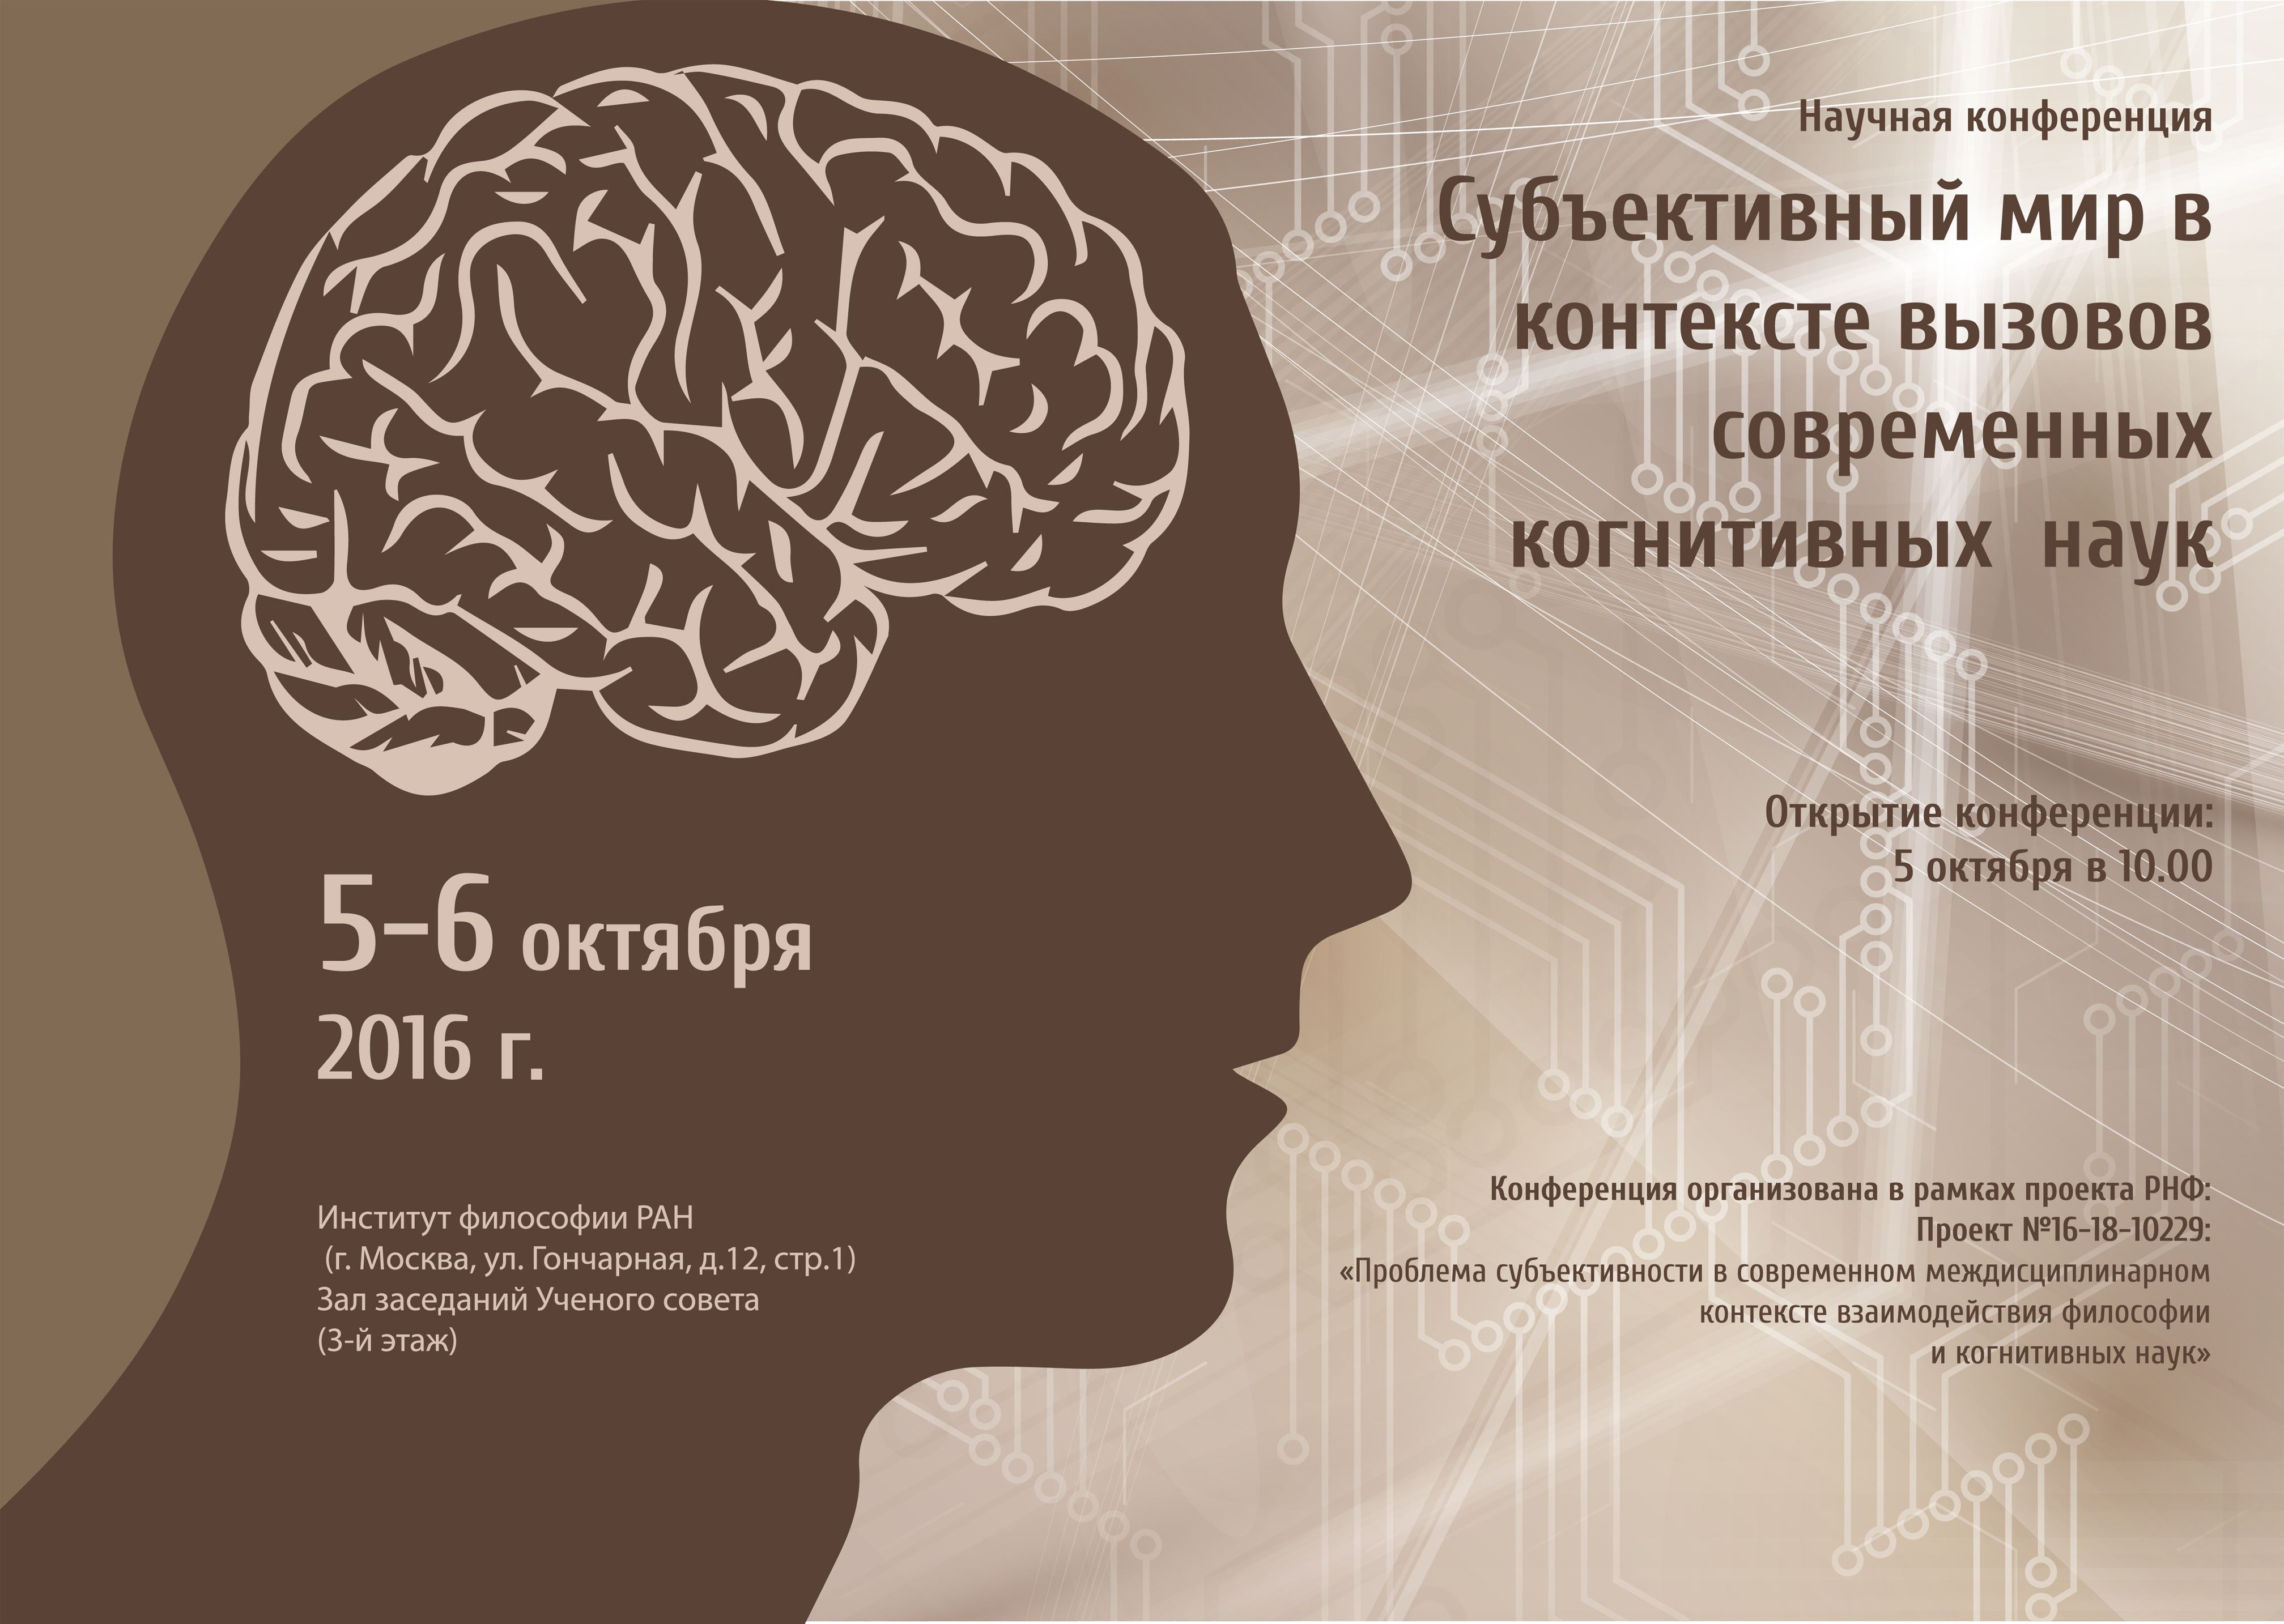 Научная конференция  «Субъективный мир в контексте вызовов современных когнитивных наук»,   5-6 октября 2016 г.   